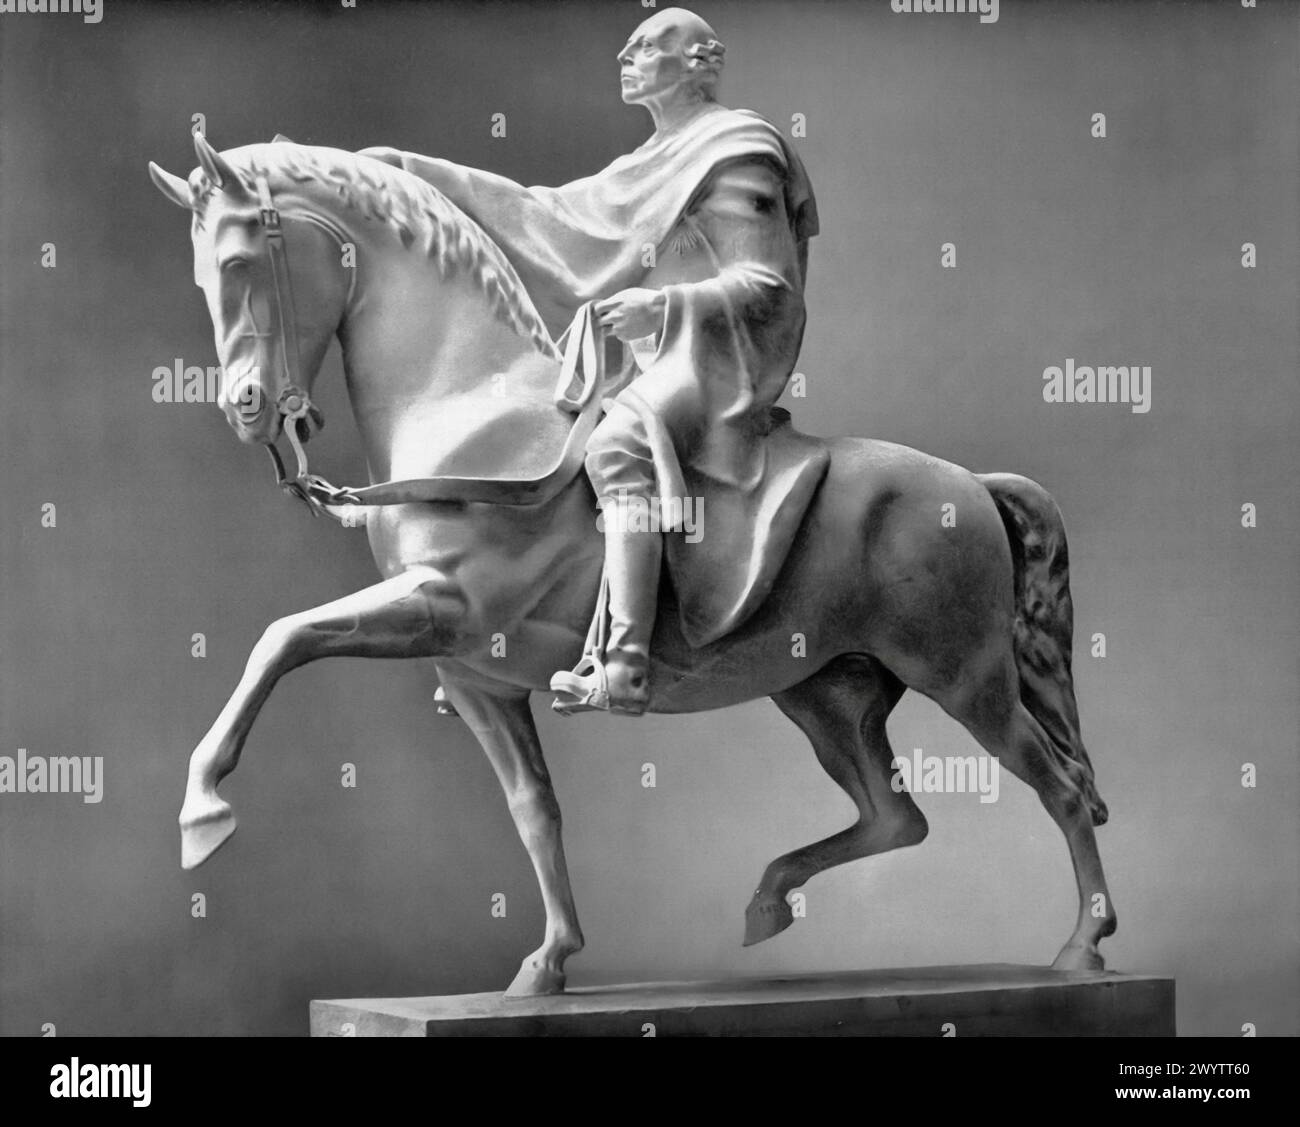 The Royal Rider' una scultura di Josef Thorak, datata intorno al 1943, serve come esempio di propaganda della seconda guerra mondiale, che riflette l'ideologia nazista con i suoi temi di forza e tradizione. Il pezzo presenta una figura a cavallo, che somiglia allo stesso Thorak. Foto Stock